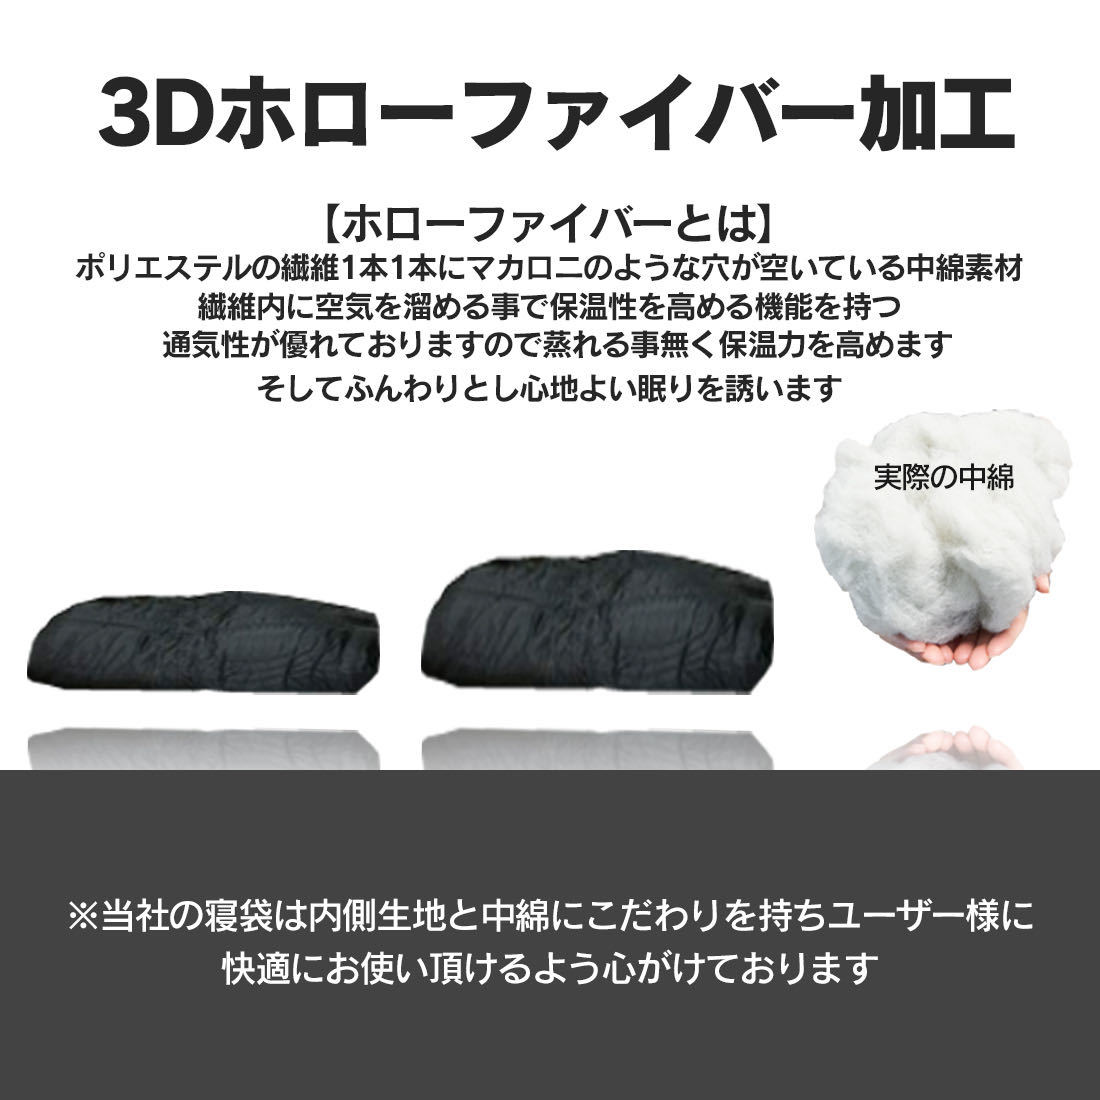 新品未使用寝袋ネイビー-7℃封筒型シュラフスリーピングバッグ紺色キャンプグランピング用寝シュラフの画像5